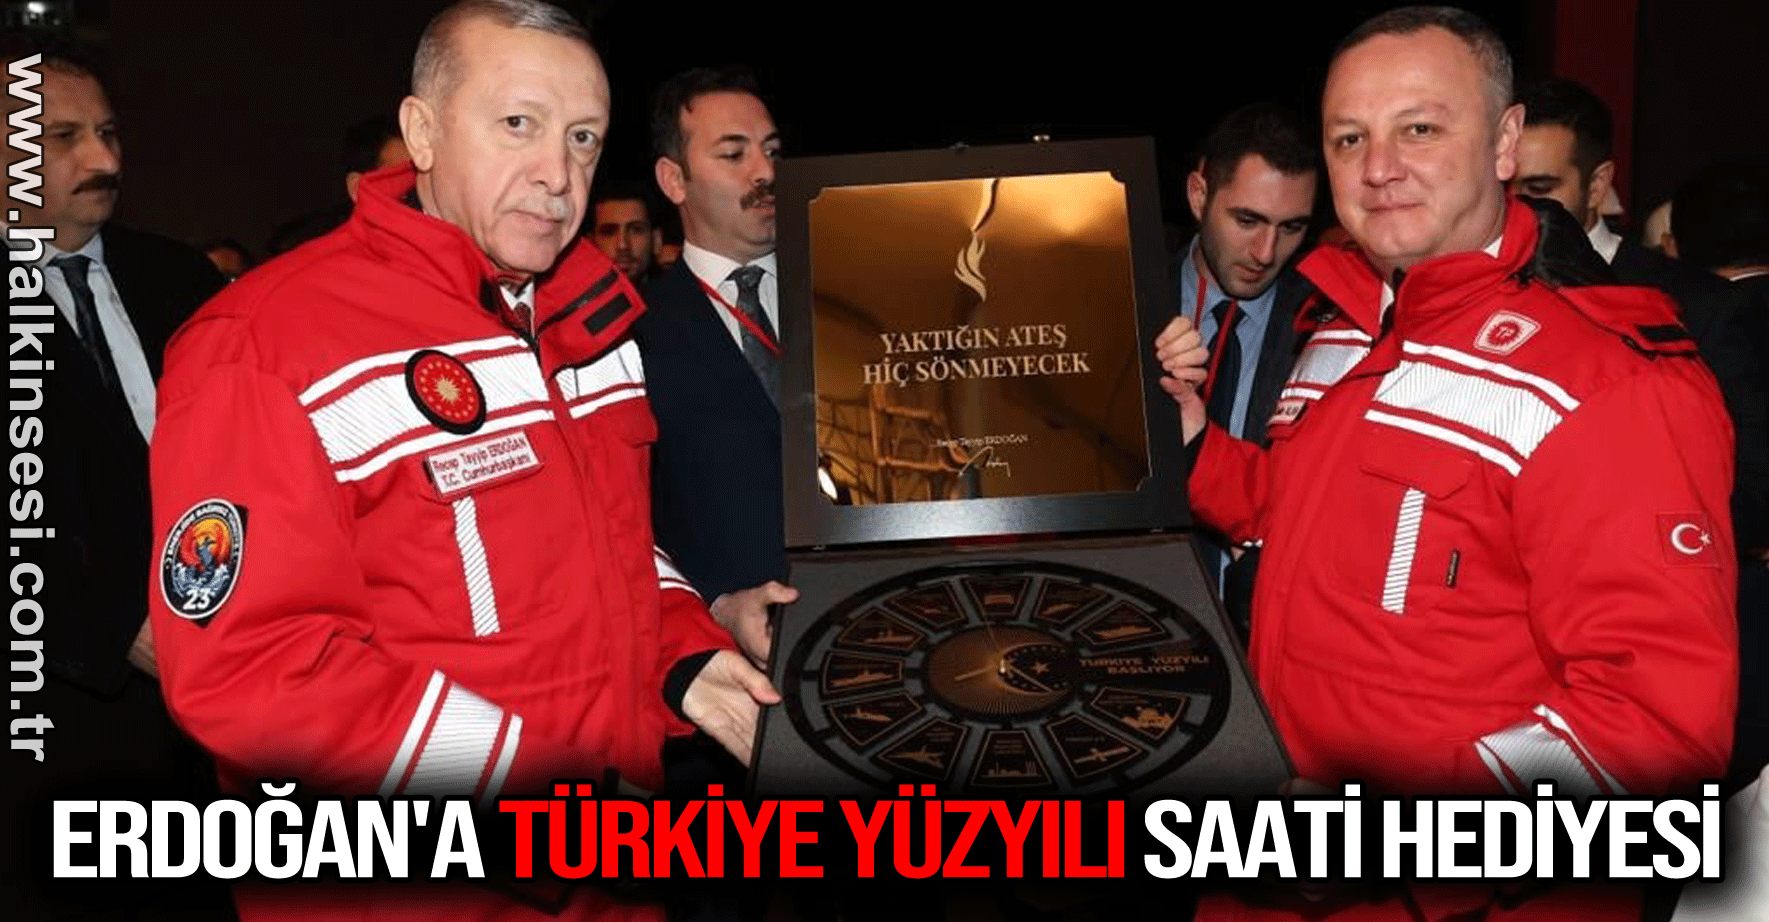 Cumhurbaşkanı Erdoğan'a Türkiye Yüzyılı saati hediyesi